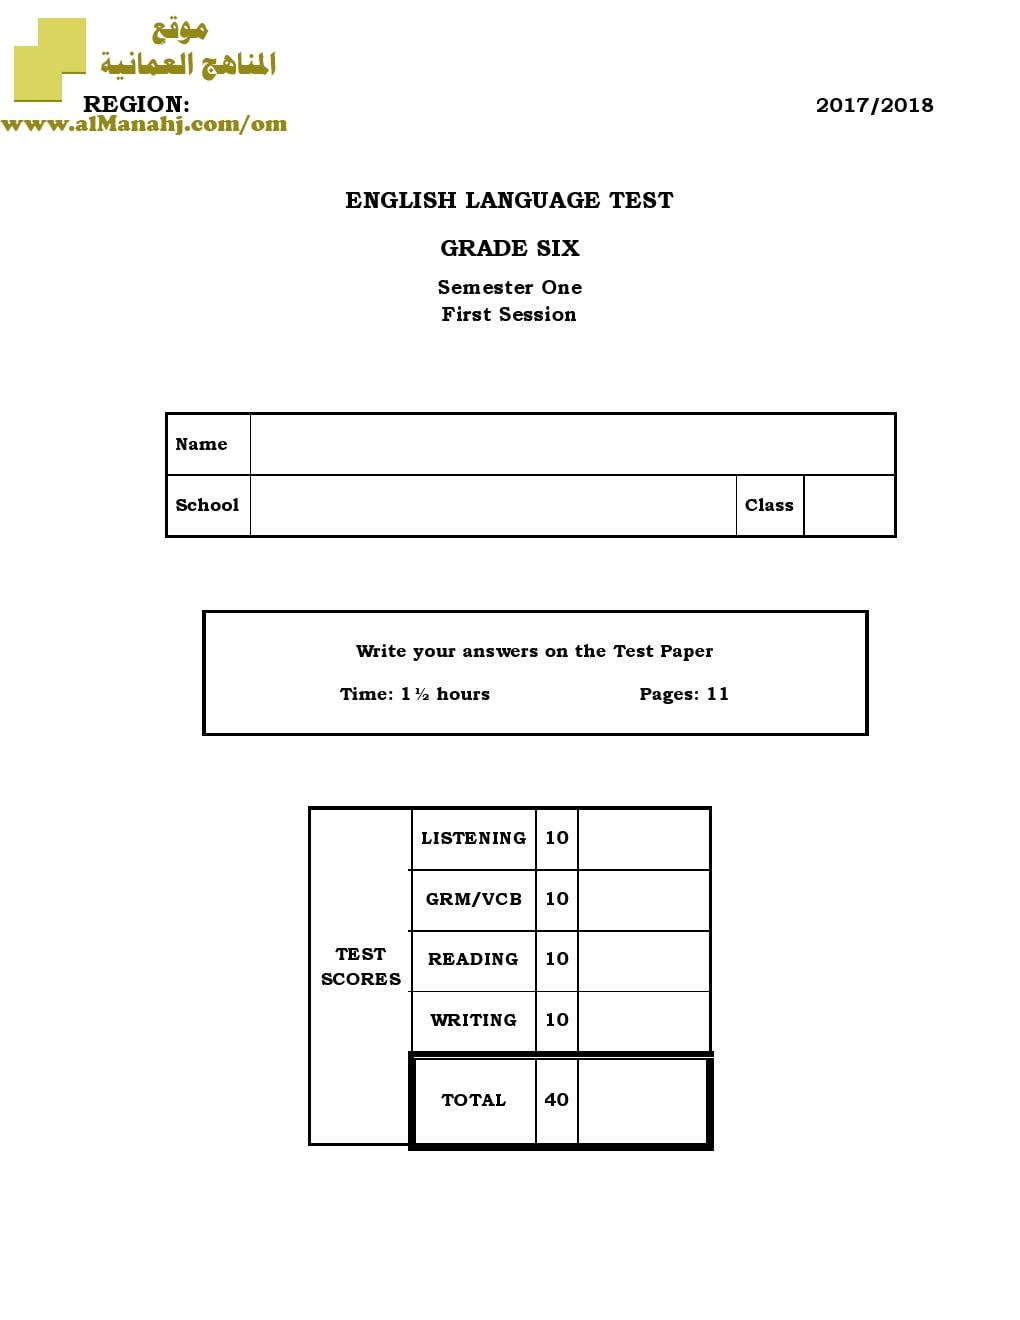 أسئلة وإجابة الامتحان الرسمي للفصل الدراسي الأول الدور الأول والثاني (لغة انجليزية) السادس